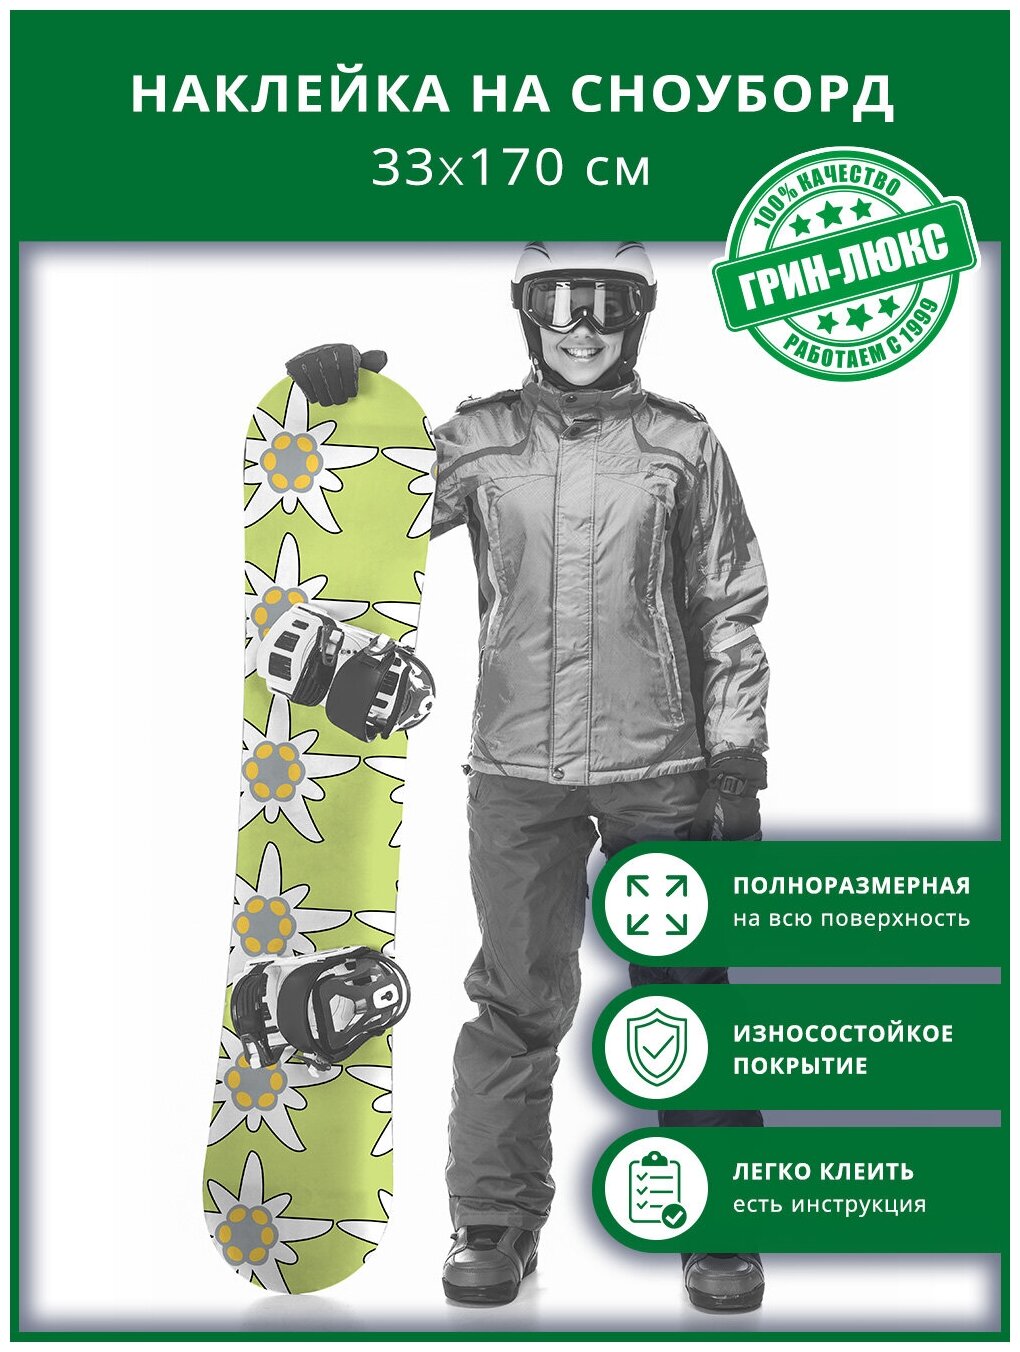 Наклейка на сноуборд с защитным глянцевым покрытием 33х170 см "Неправильная ромашка"